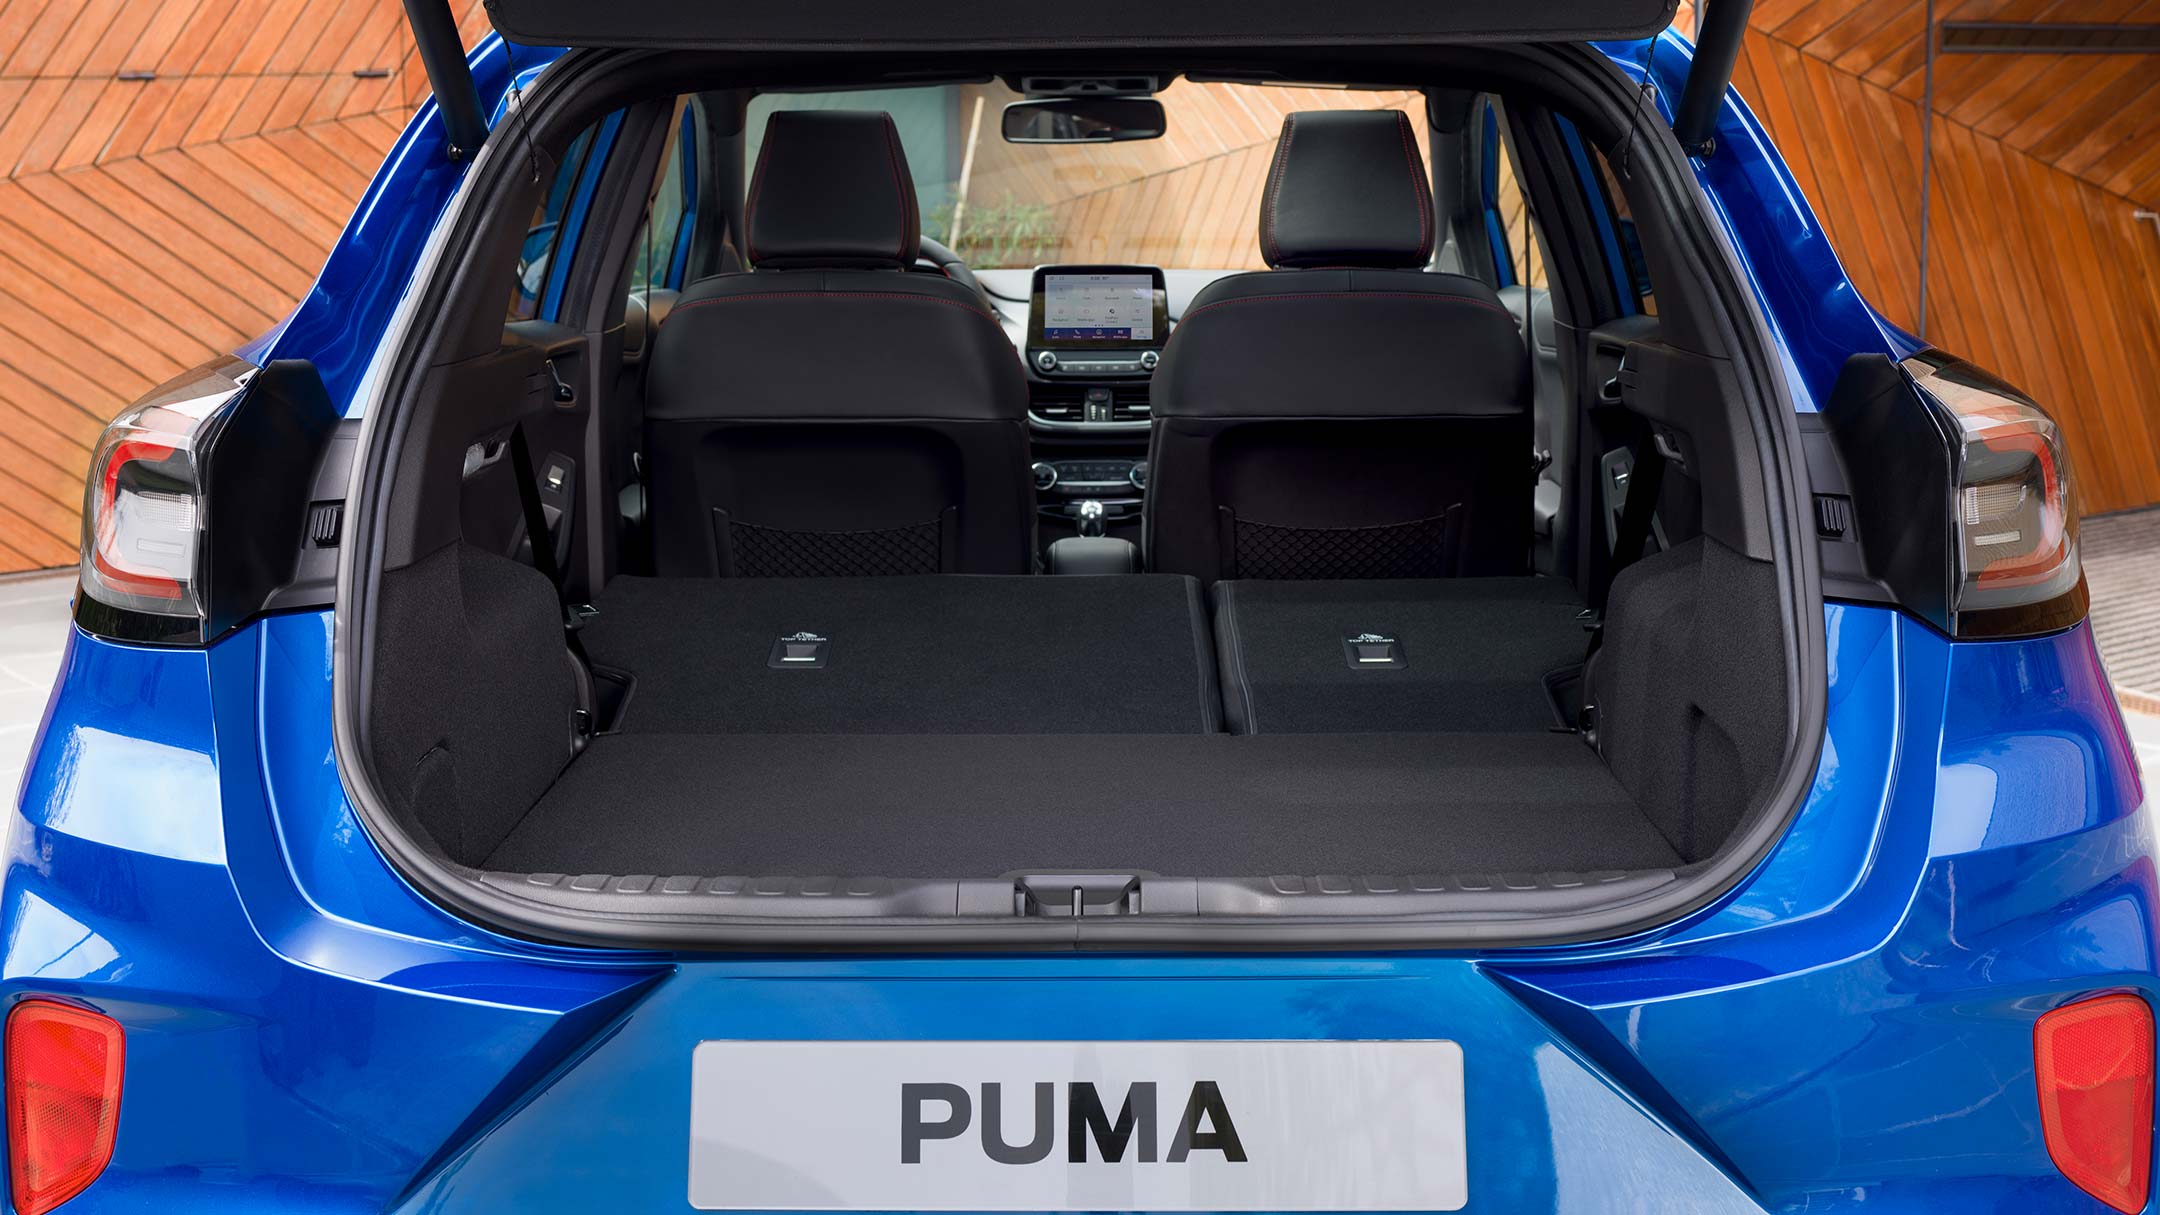 Ford Puma in Blau. Heckansicht mit umgeklappten Rücksitzen